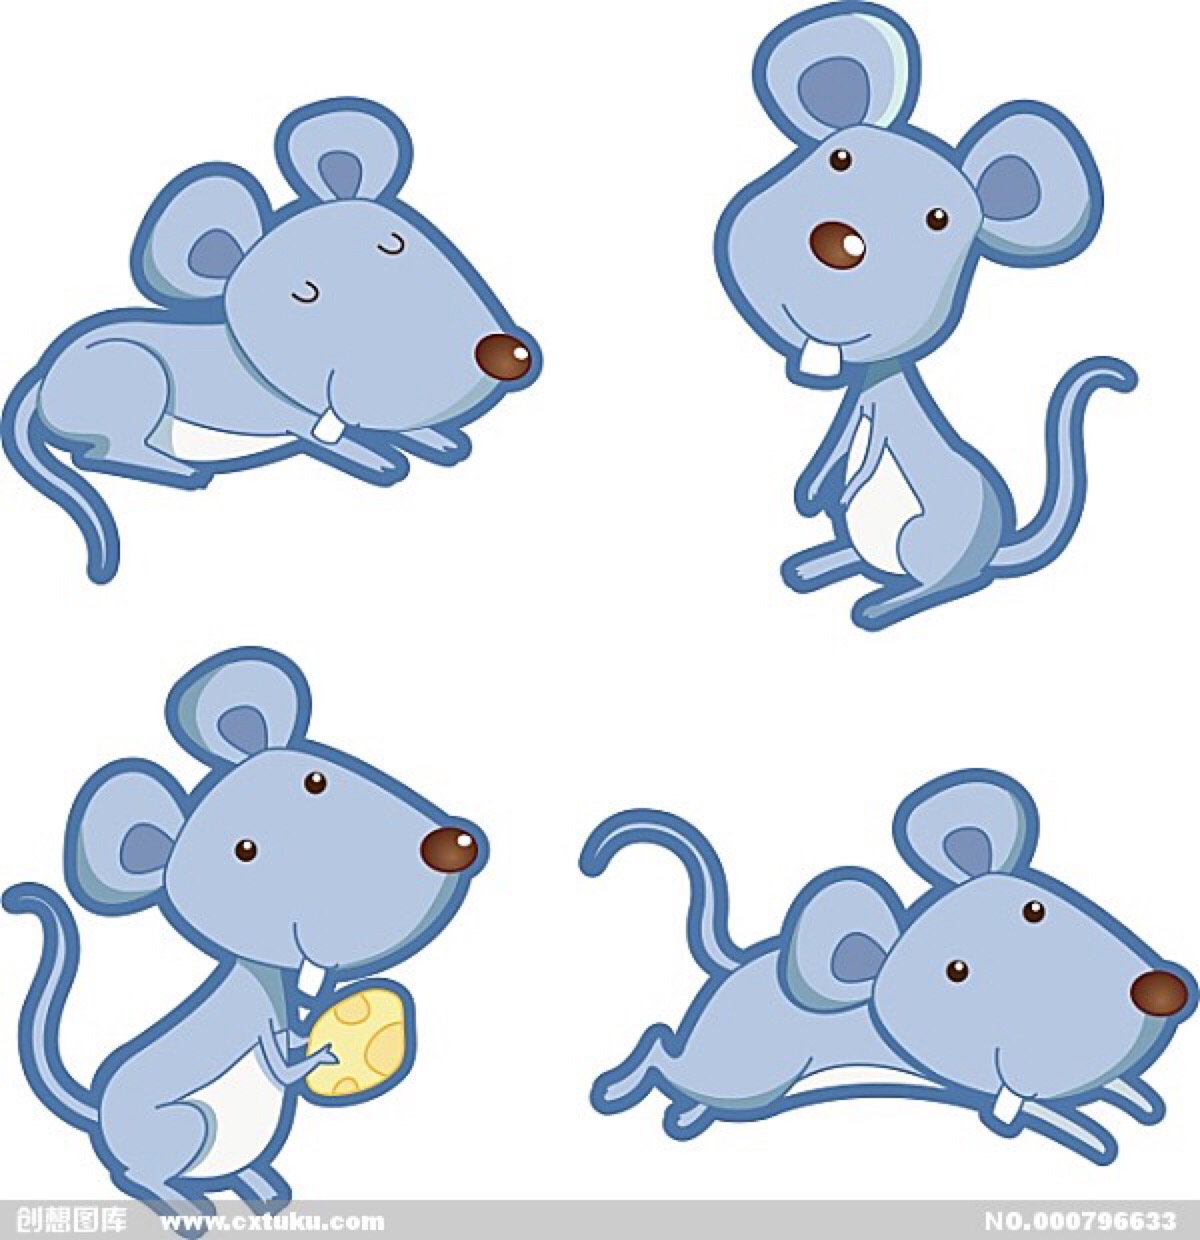 老鼠吉祥物设计简笔画_老鼠吉祥物设计简笔画分享展示